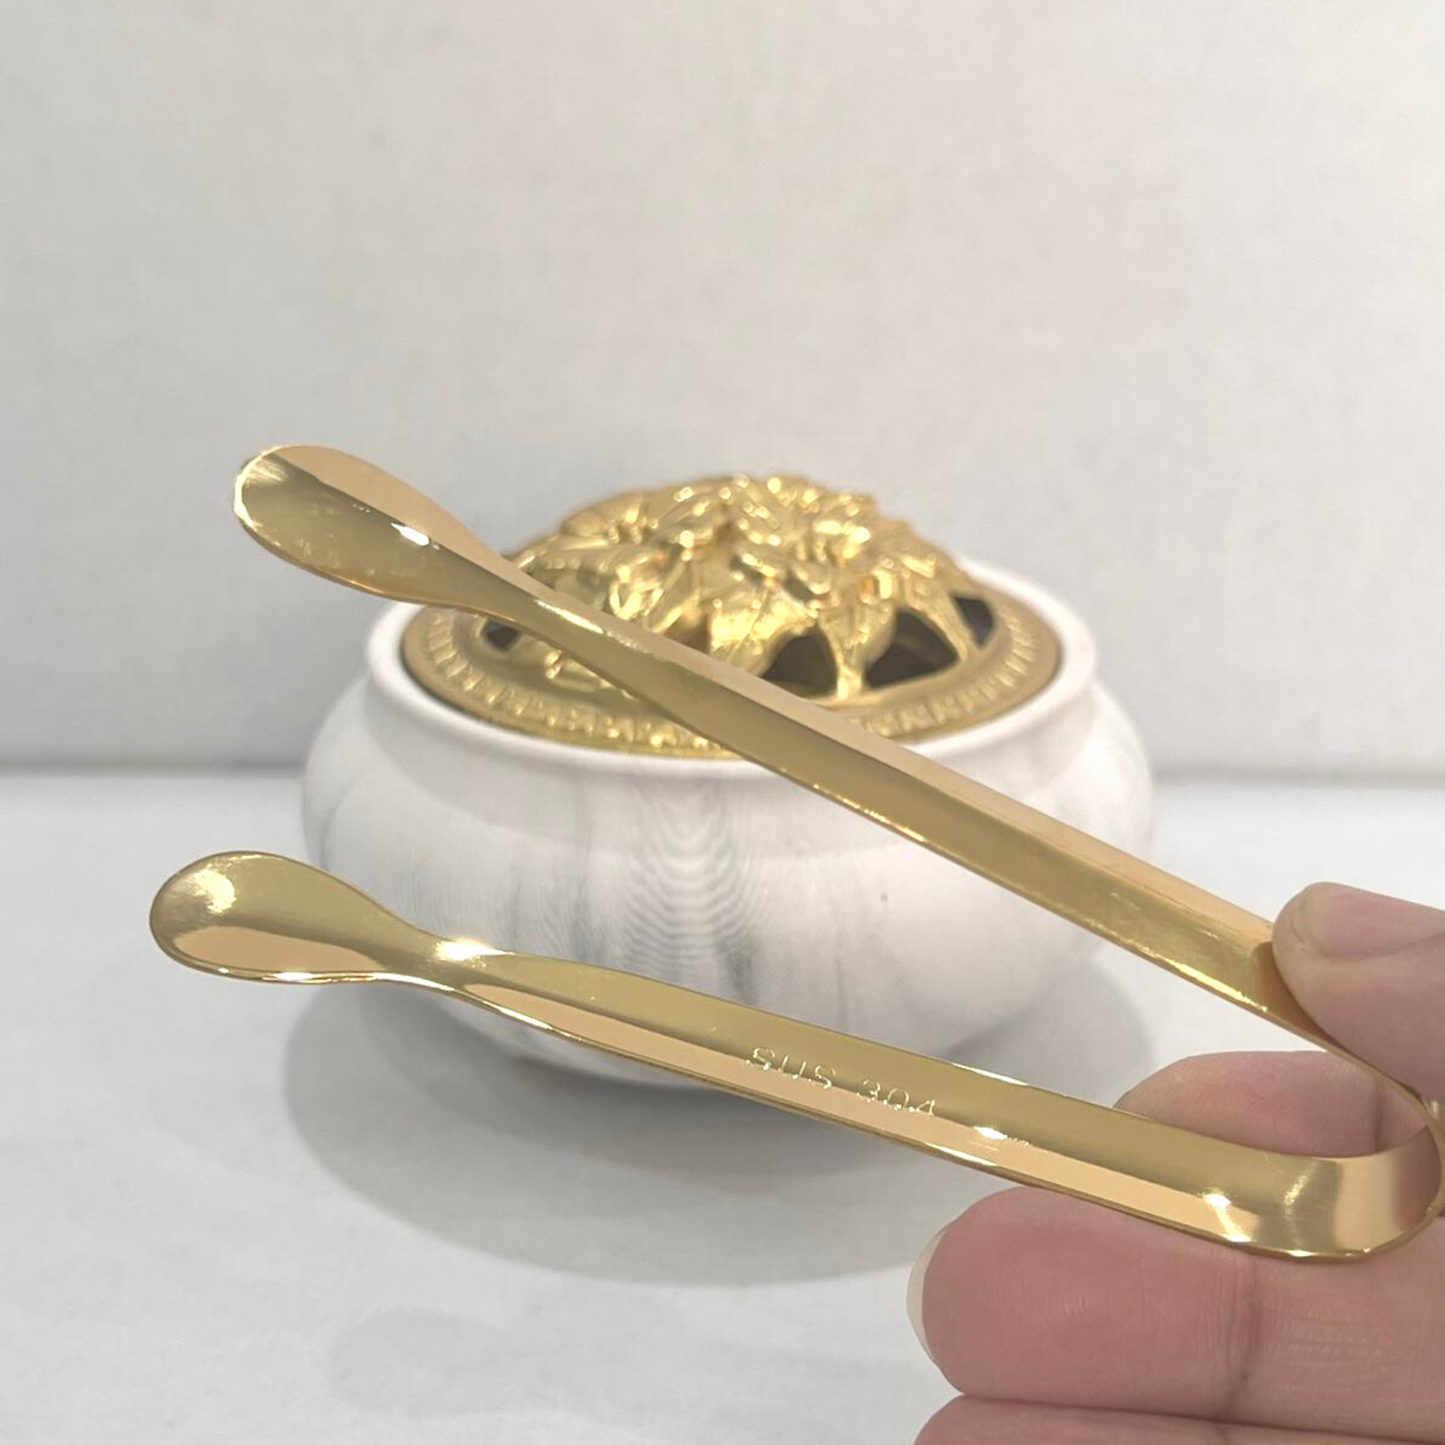 Bakhoor Incense Burner Marble and gold design (PRE ORDER ONLY )